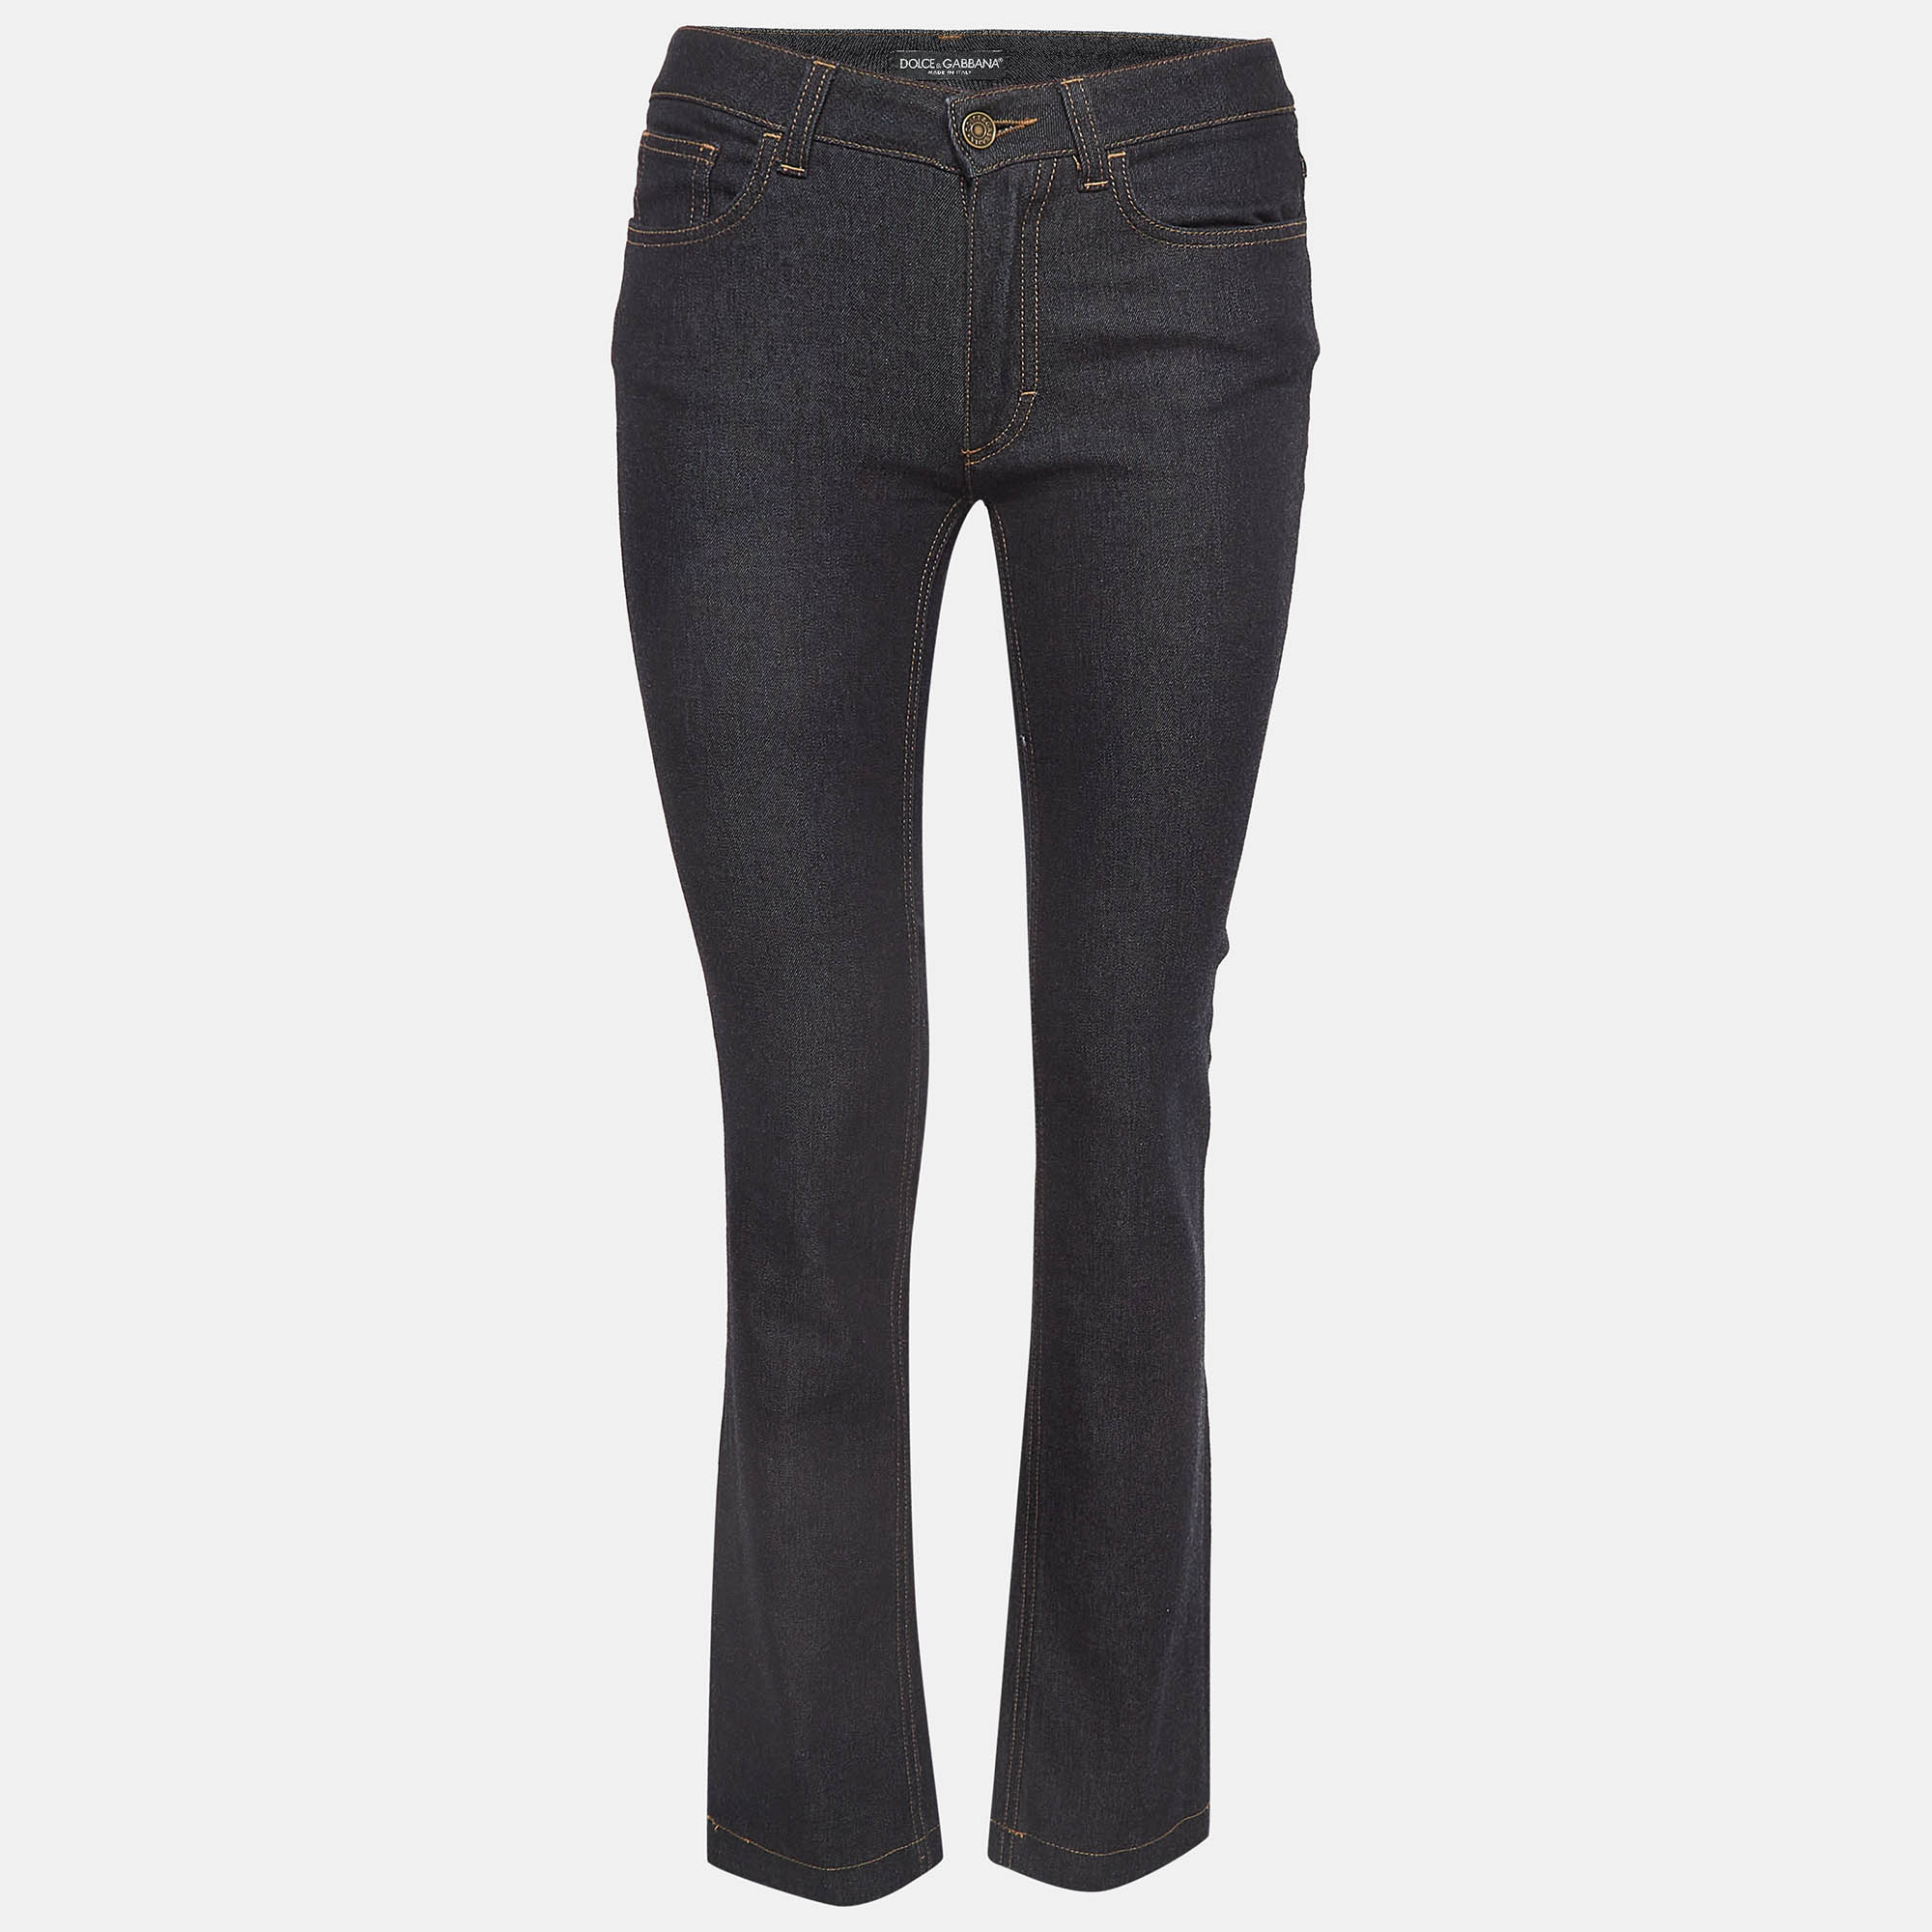 Dolce & gabbana navy blue denim slimmy jeans s waist 28"